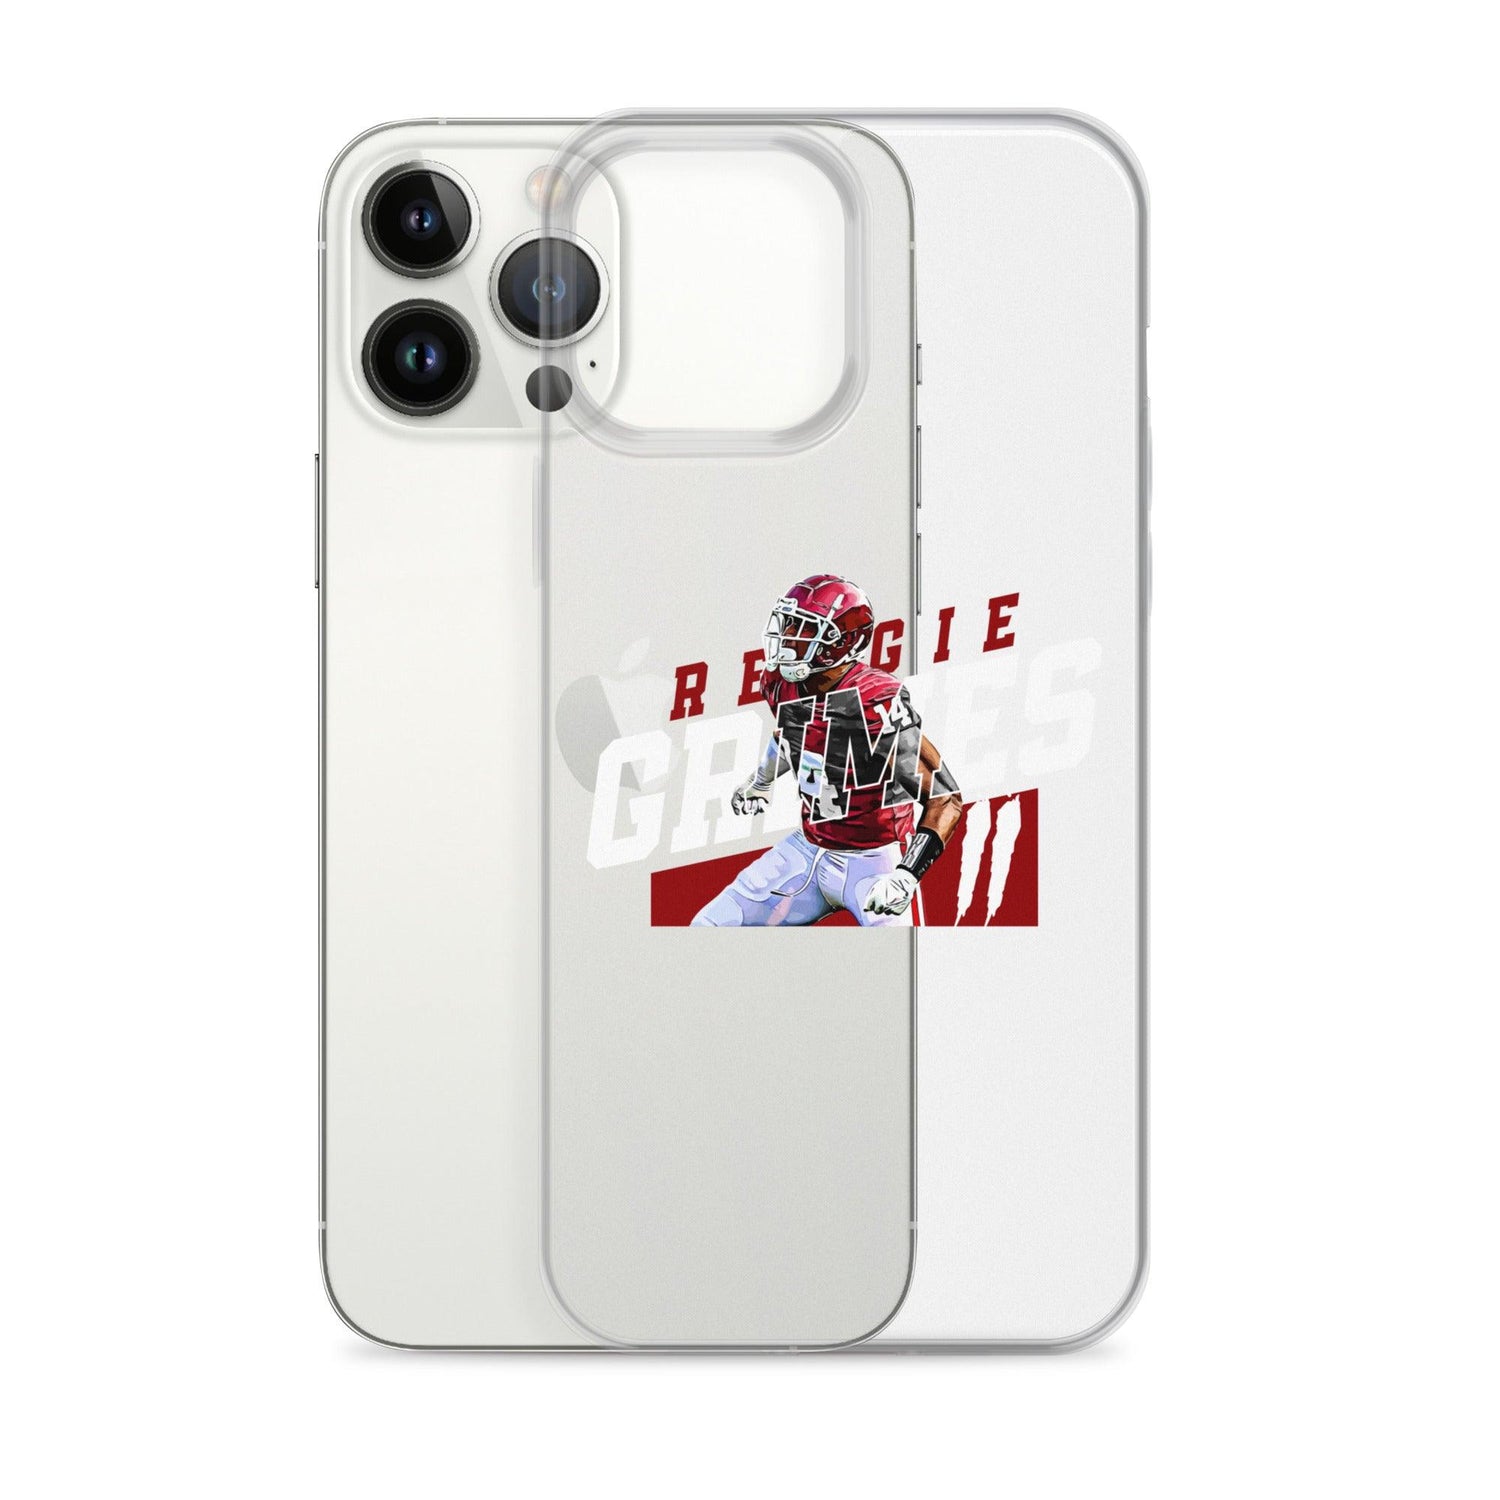 Reggie Grimes II "Gametime" iPhone Case - Fan Arch